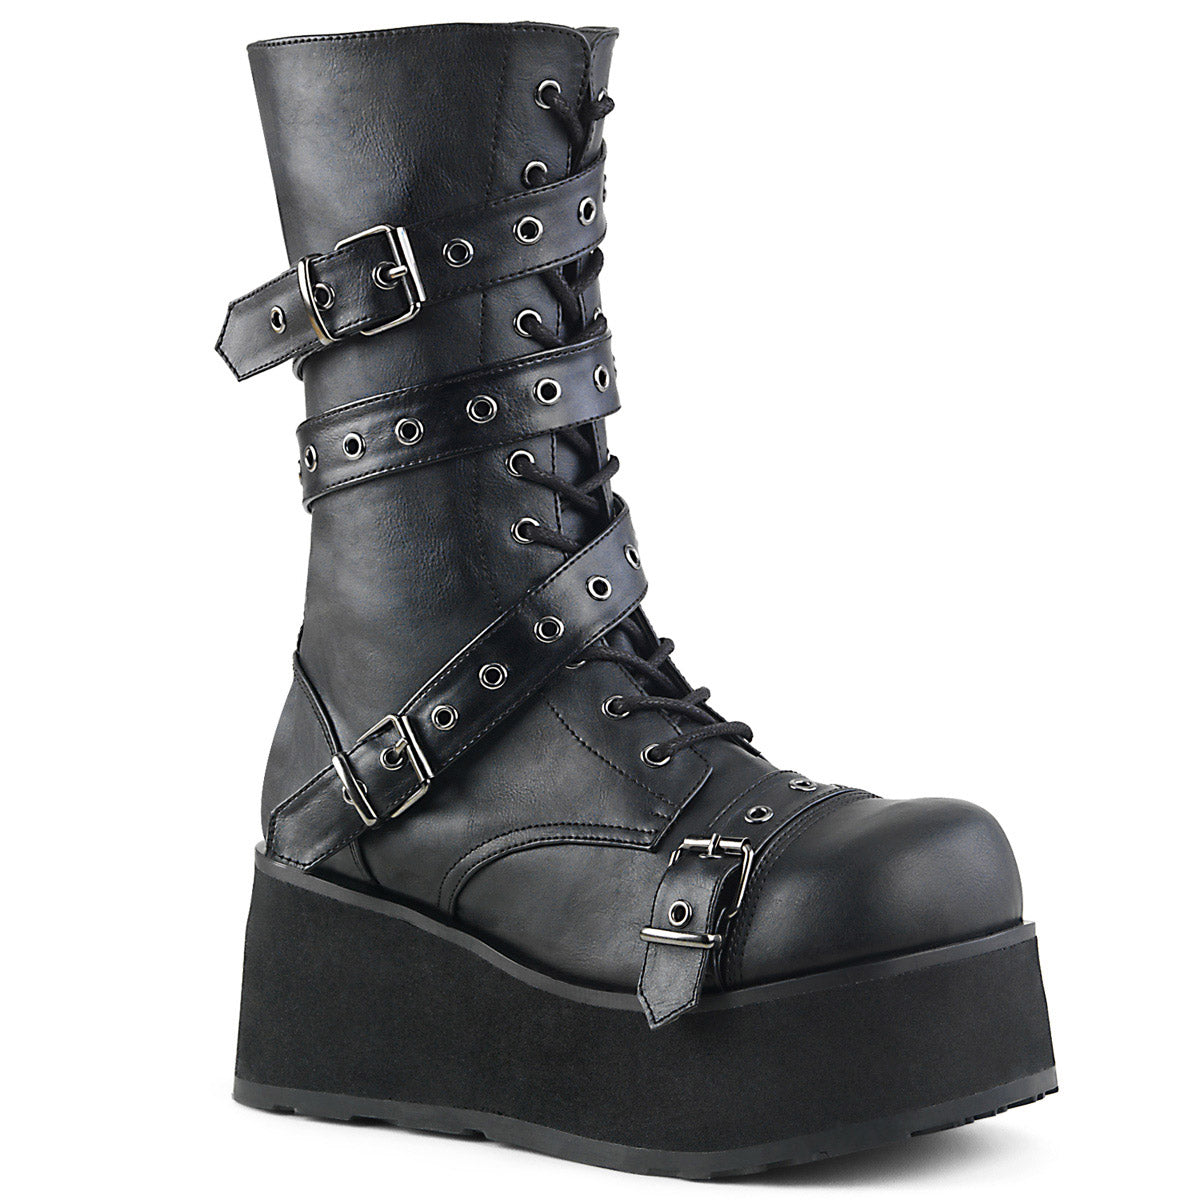 Lace Up Rivet Buckle Strap Extreme Platform Cap Toe Ankle Boots Shoes Pleaser Demonia TRASHVILLE/205